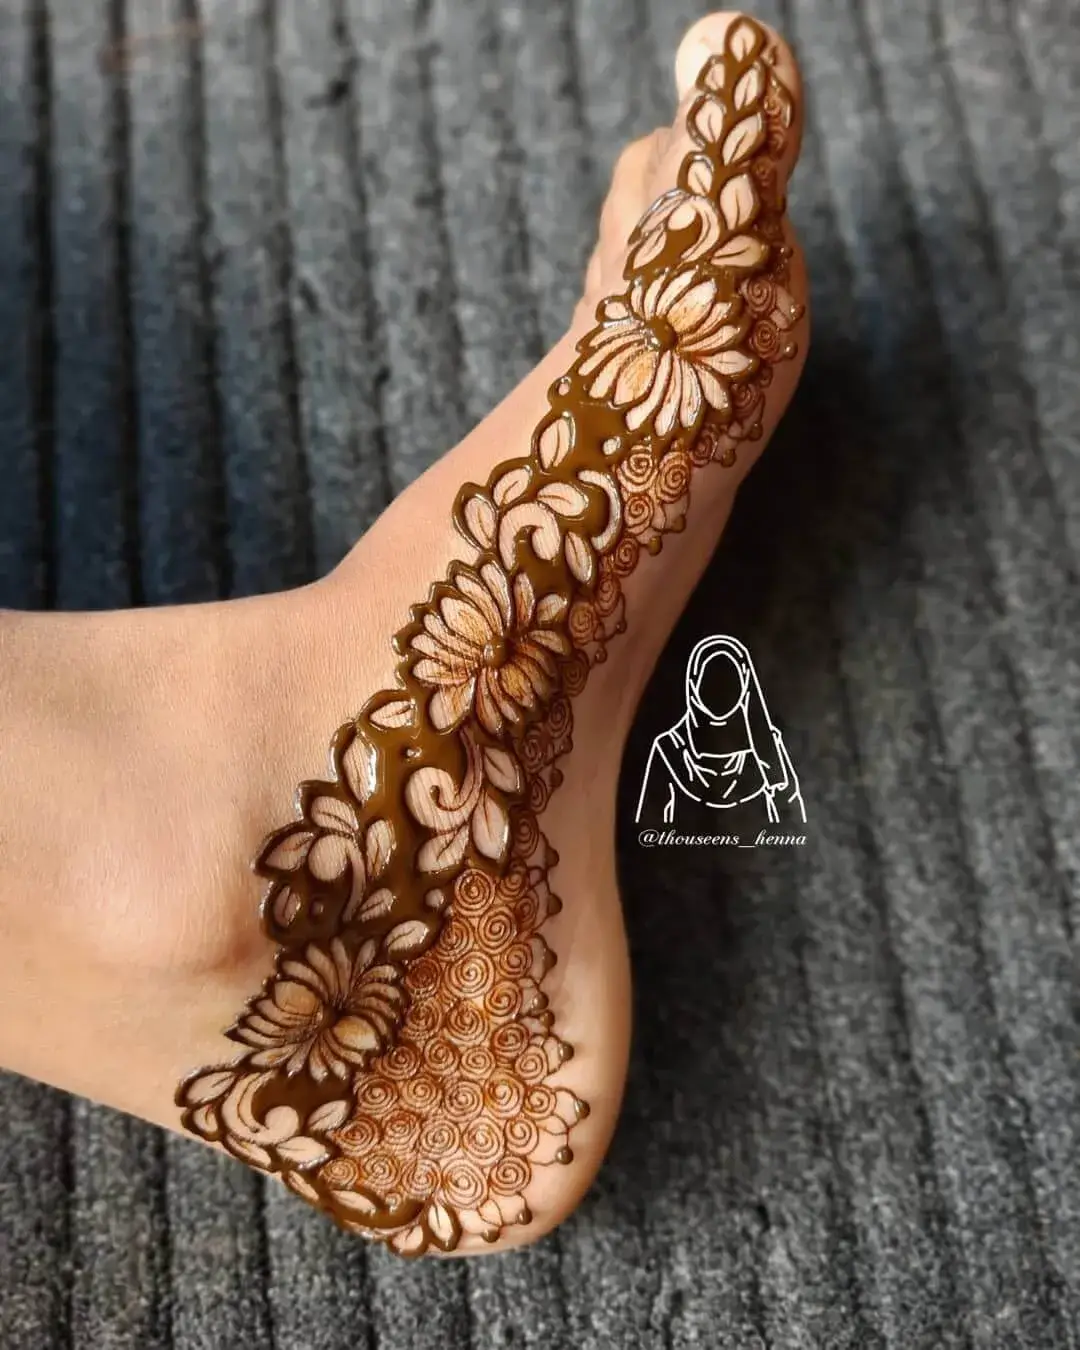 Simplest Mehndi Design : दुल्हन के पैरों में खूब सजेंगी ये नई लेटेस्‍ट  मेहंदी डिजाइन, तारीफ करते नहीं थकेंगे लोग - Betul Update